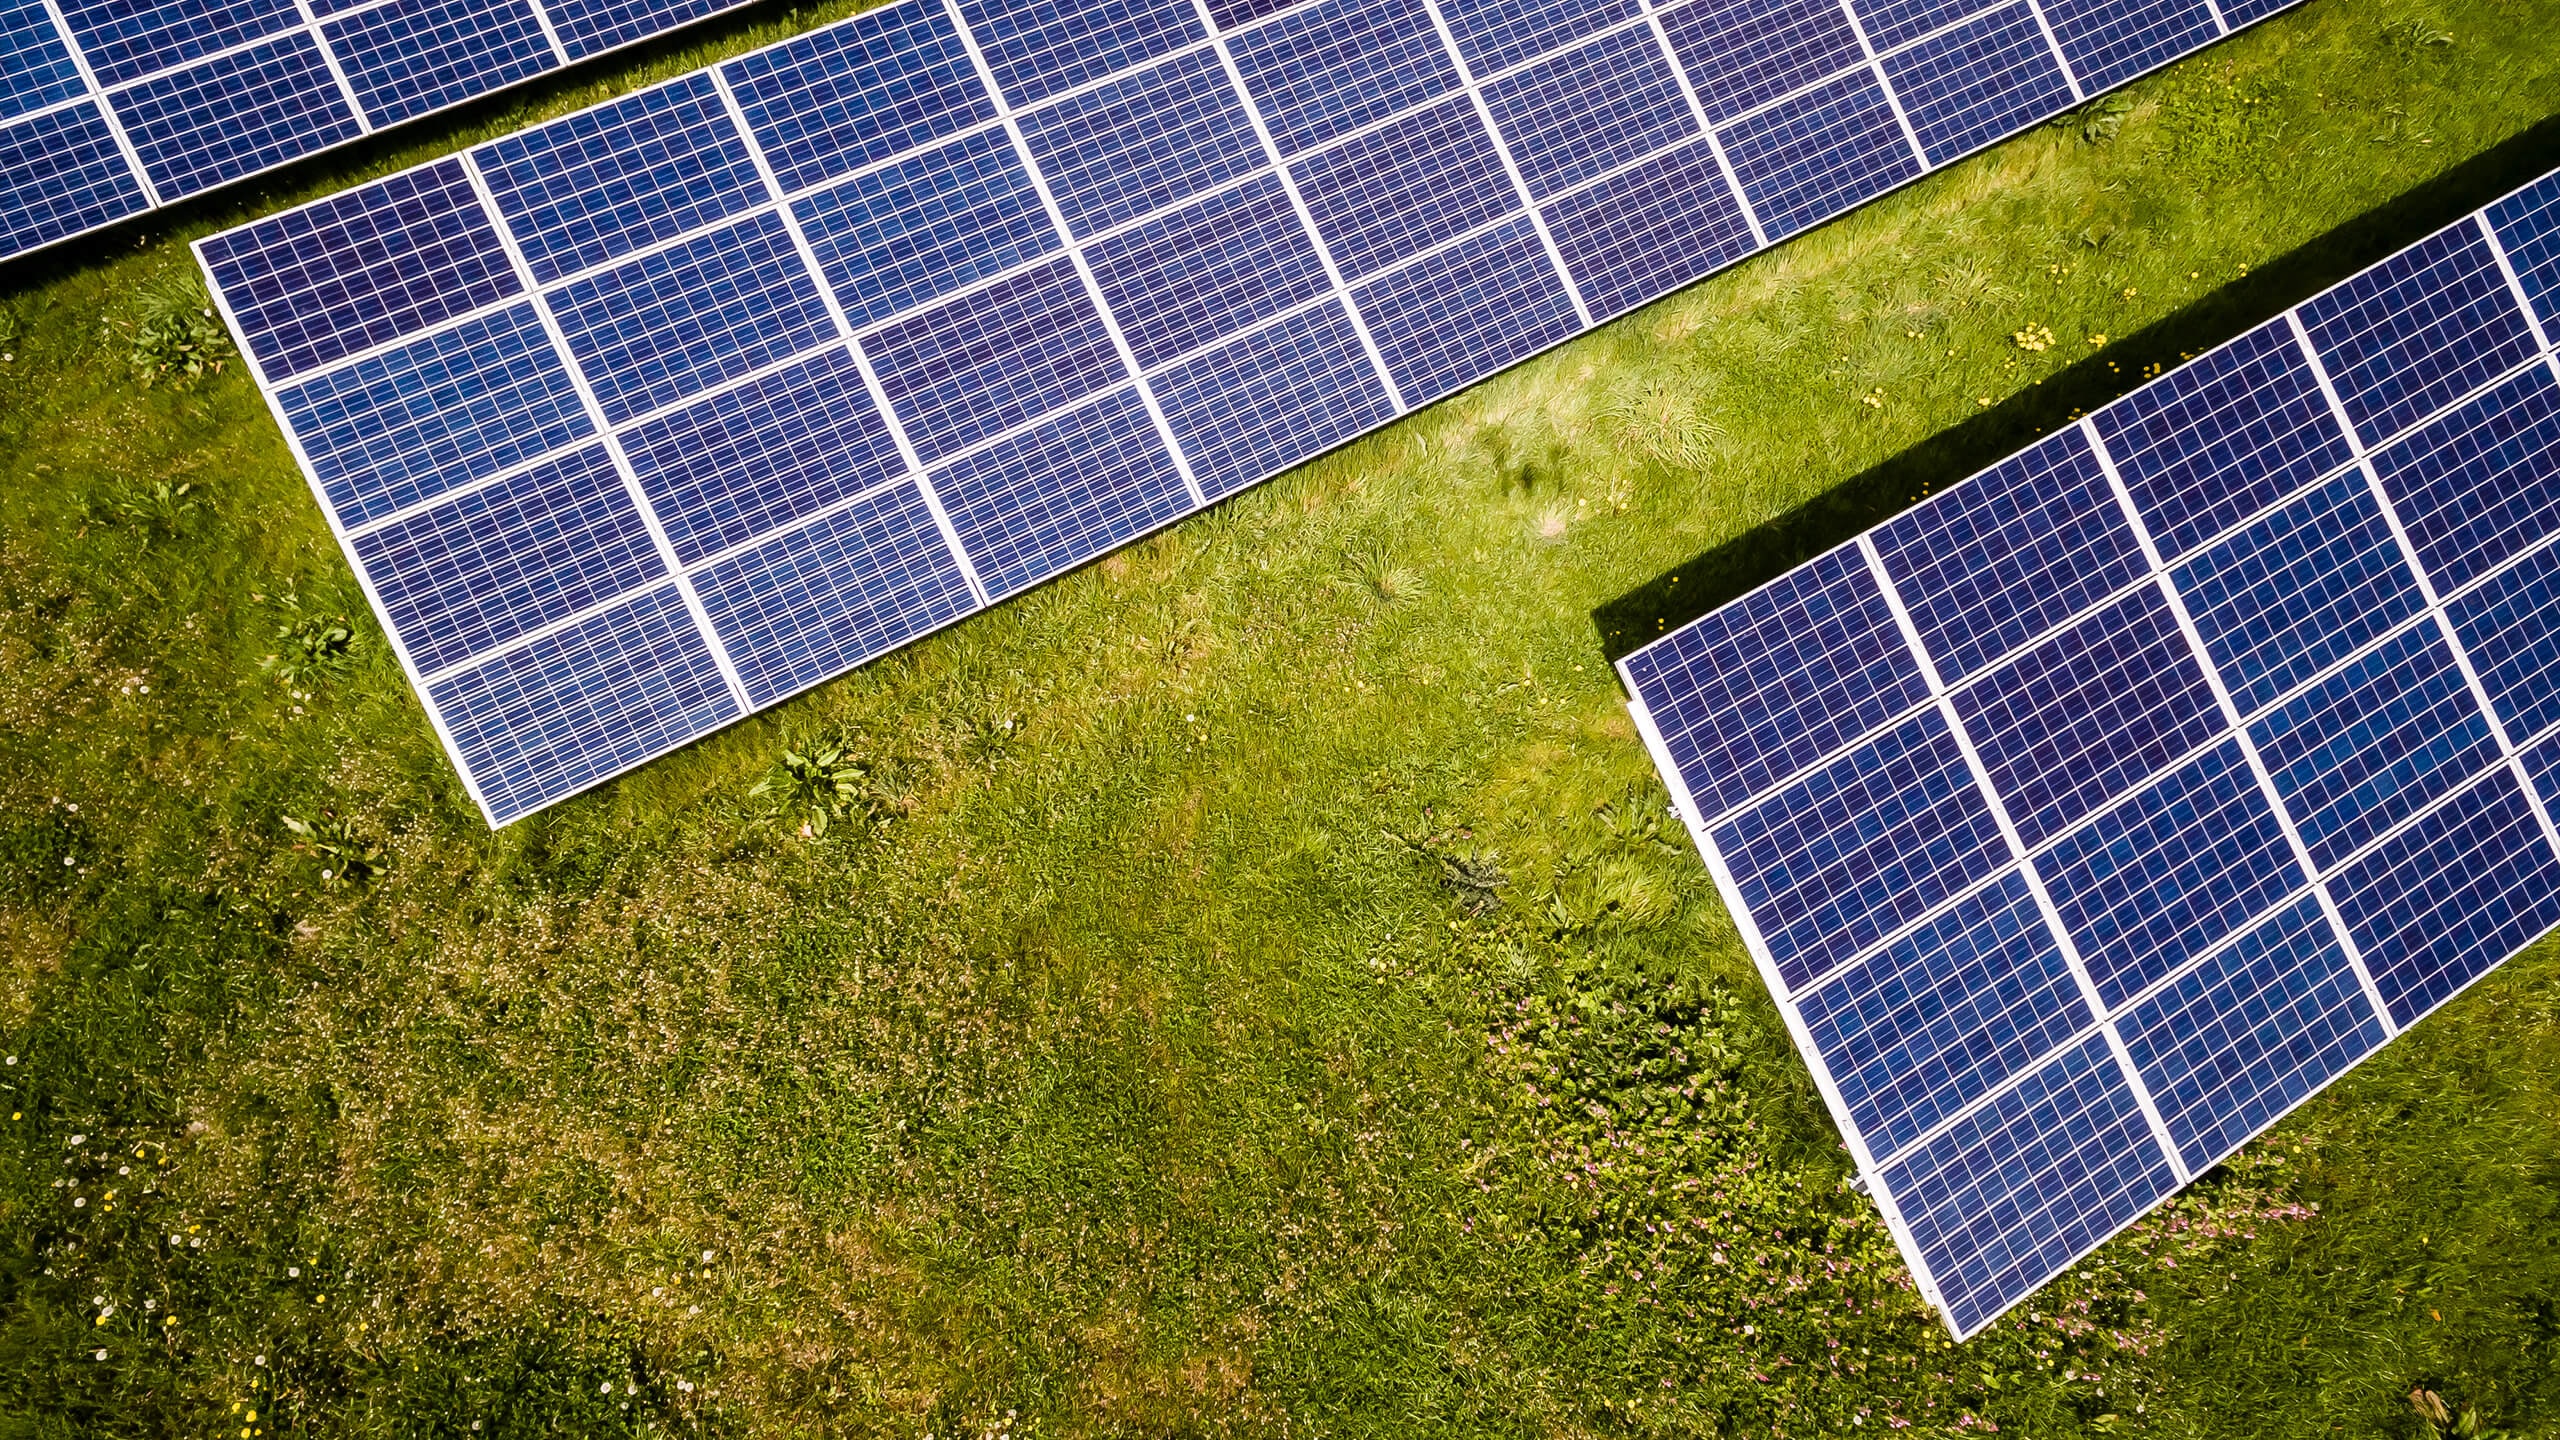 Image of three solar panels